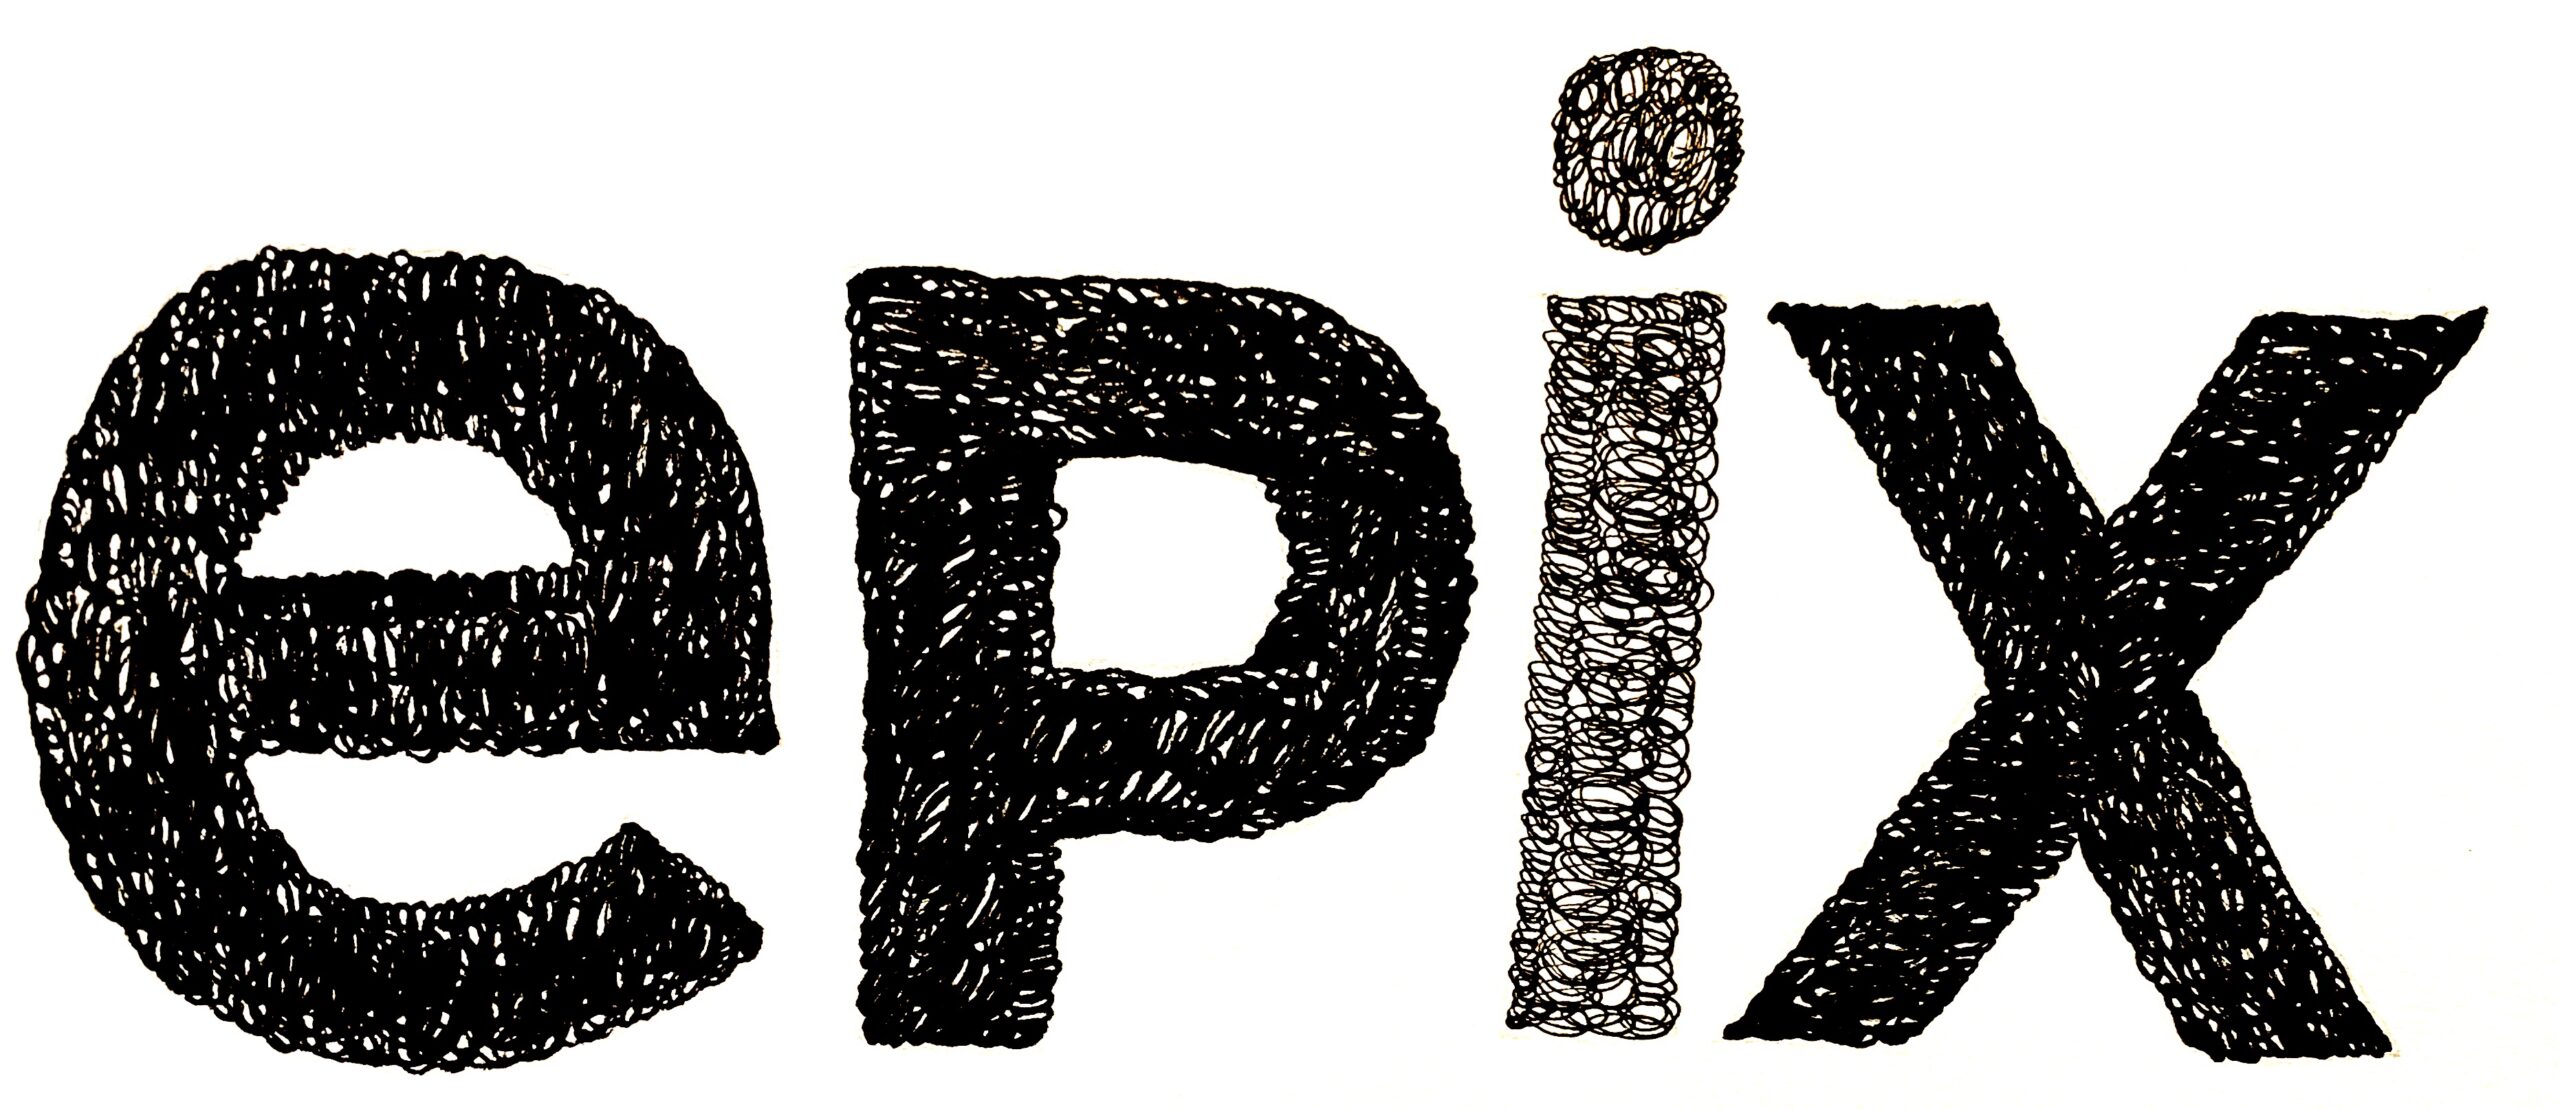 Epix Logo